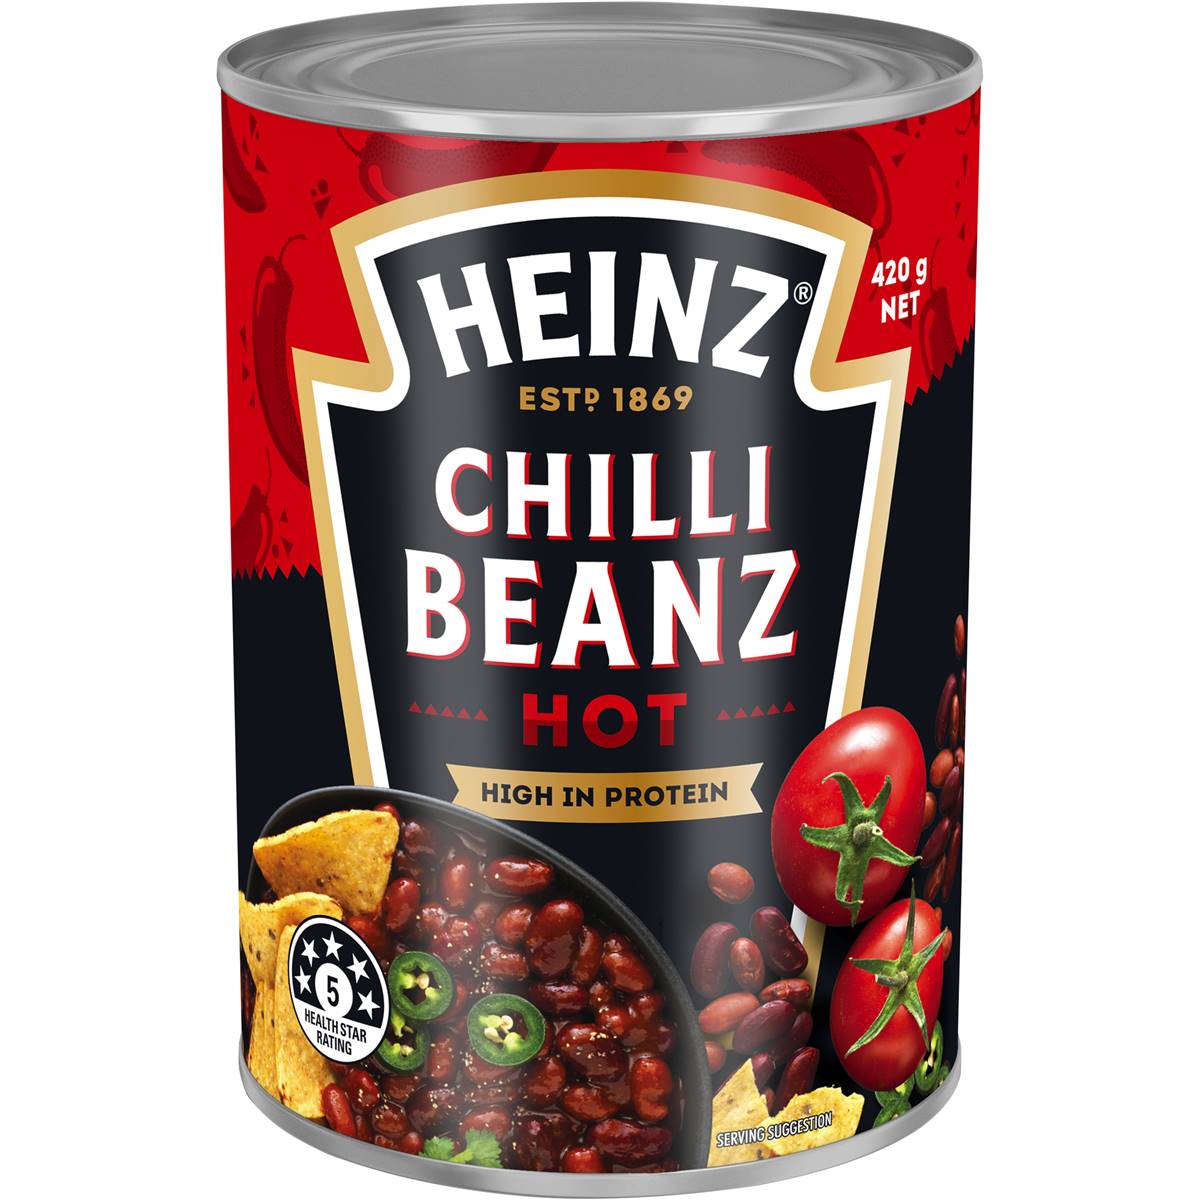 Heinz Mexican Chilli Beanz Beans Hot Canned Beans 420g